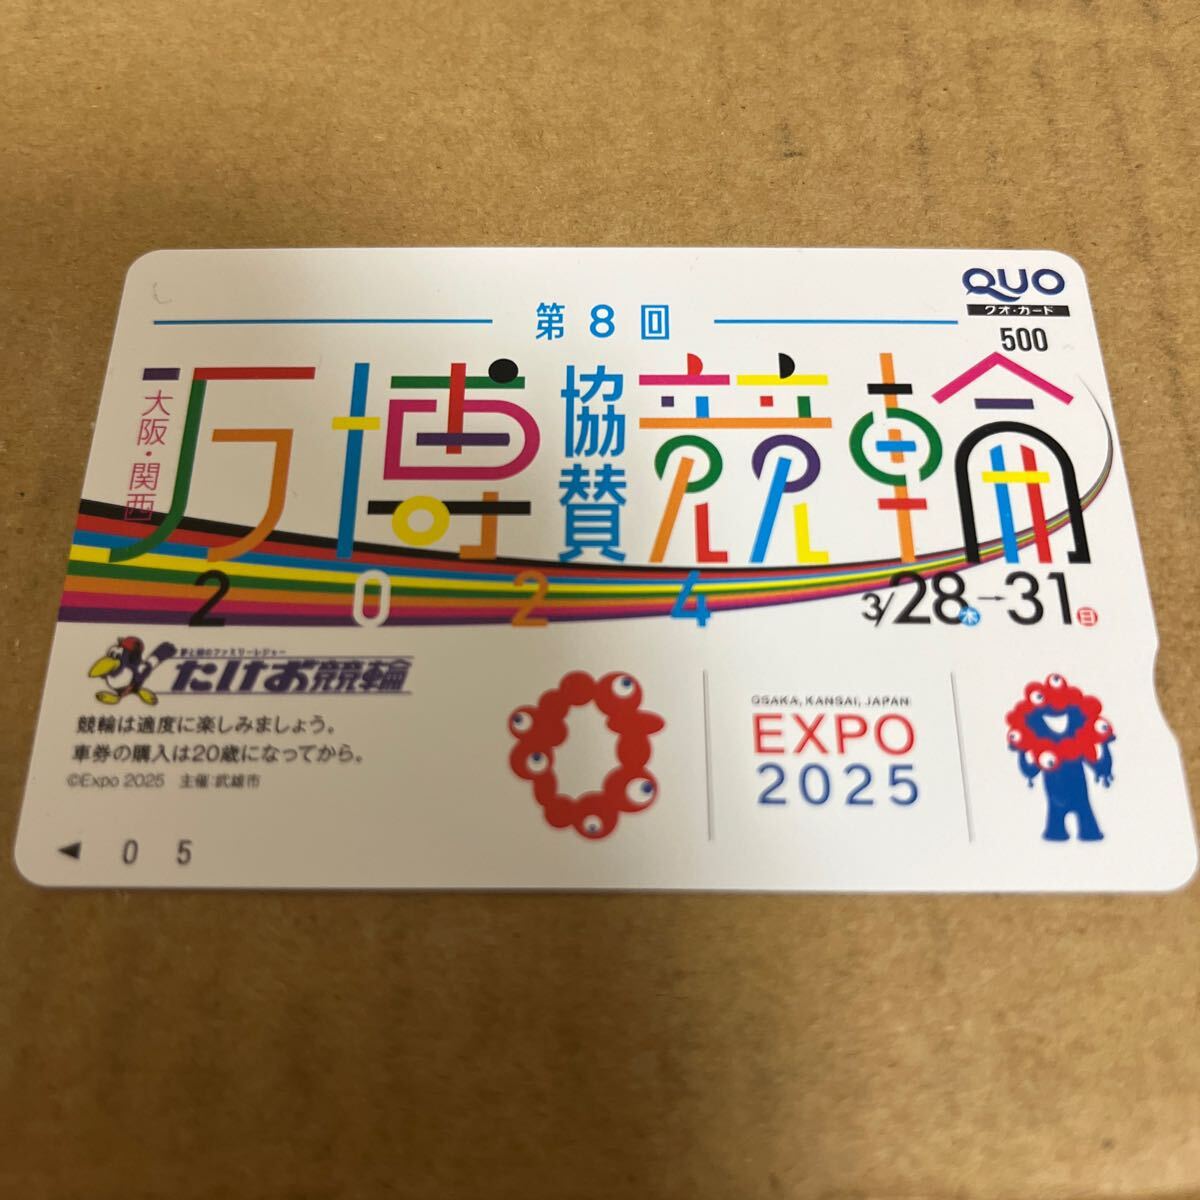  Osaka Kansai ten thousand ... bicycle race ten thousand .EXPO2025... bicycle race QUO card QUO card 